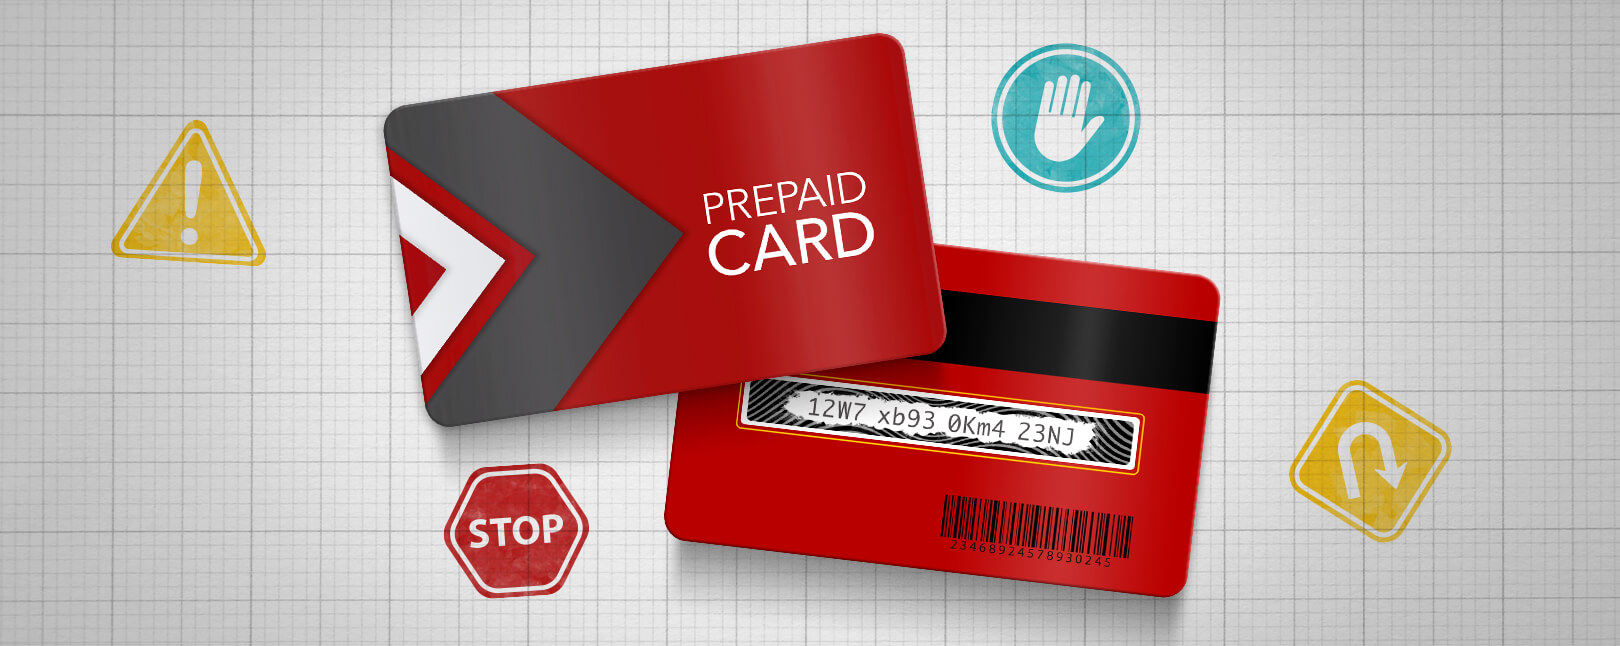 Prepaid Card Scams